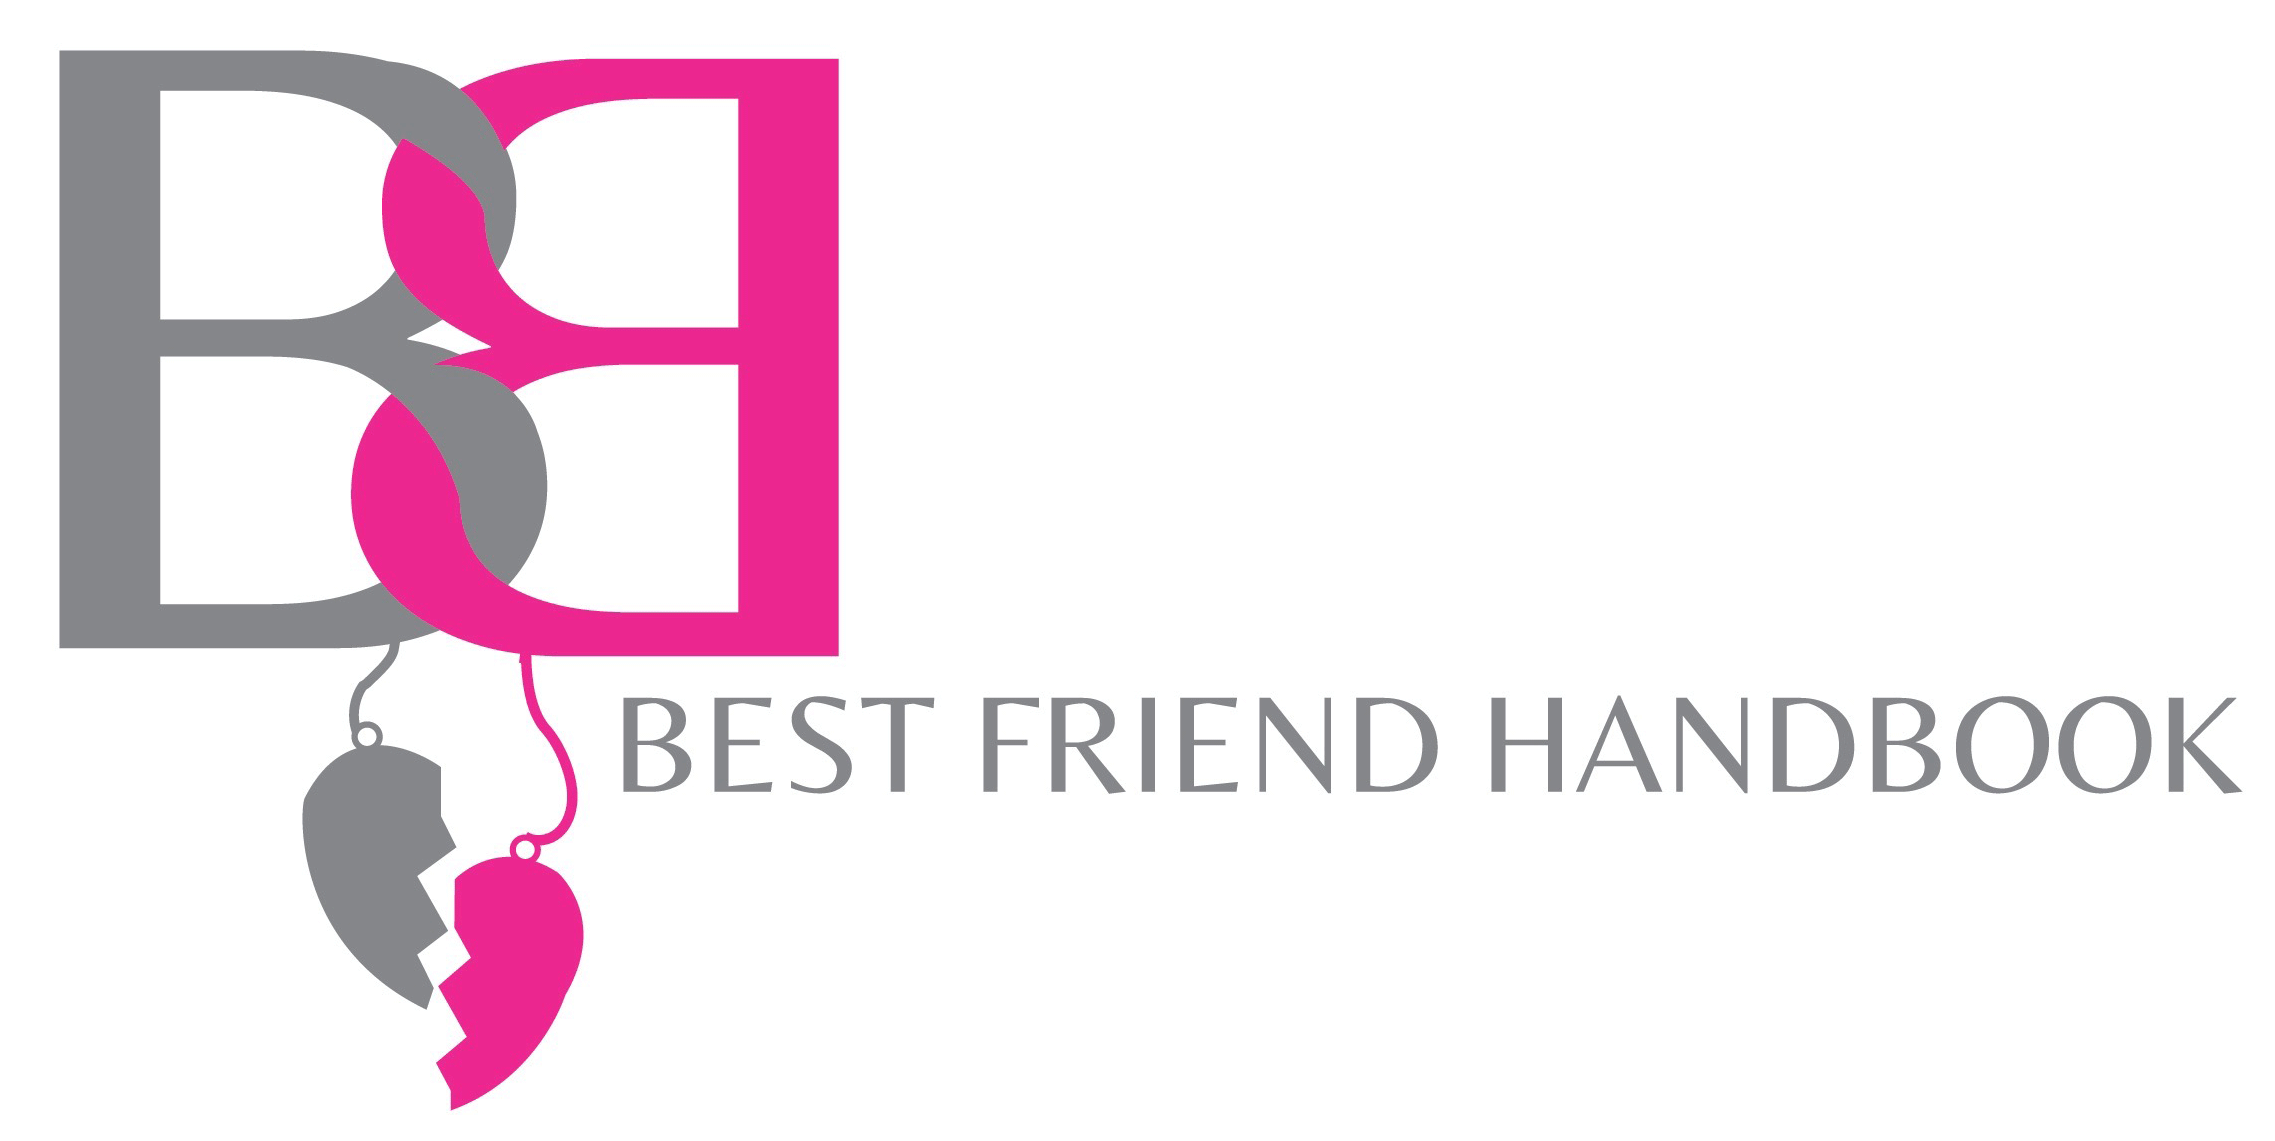 The Best Friend Handbook